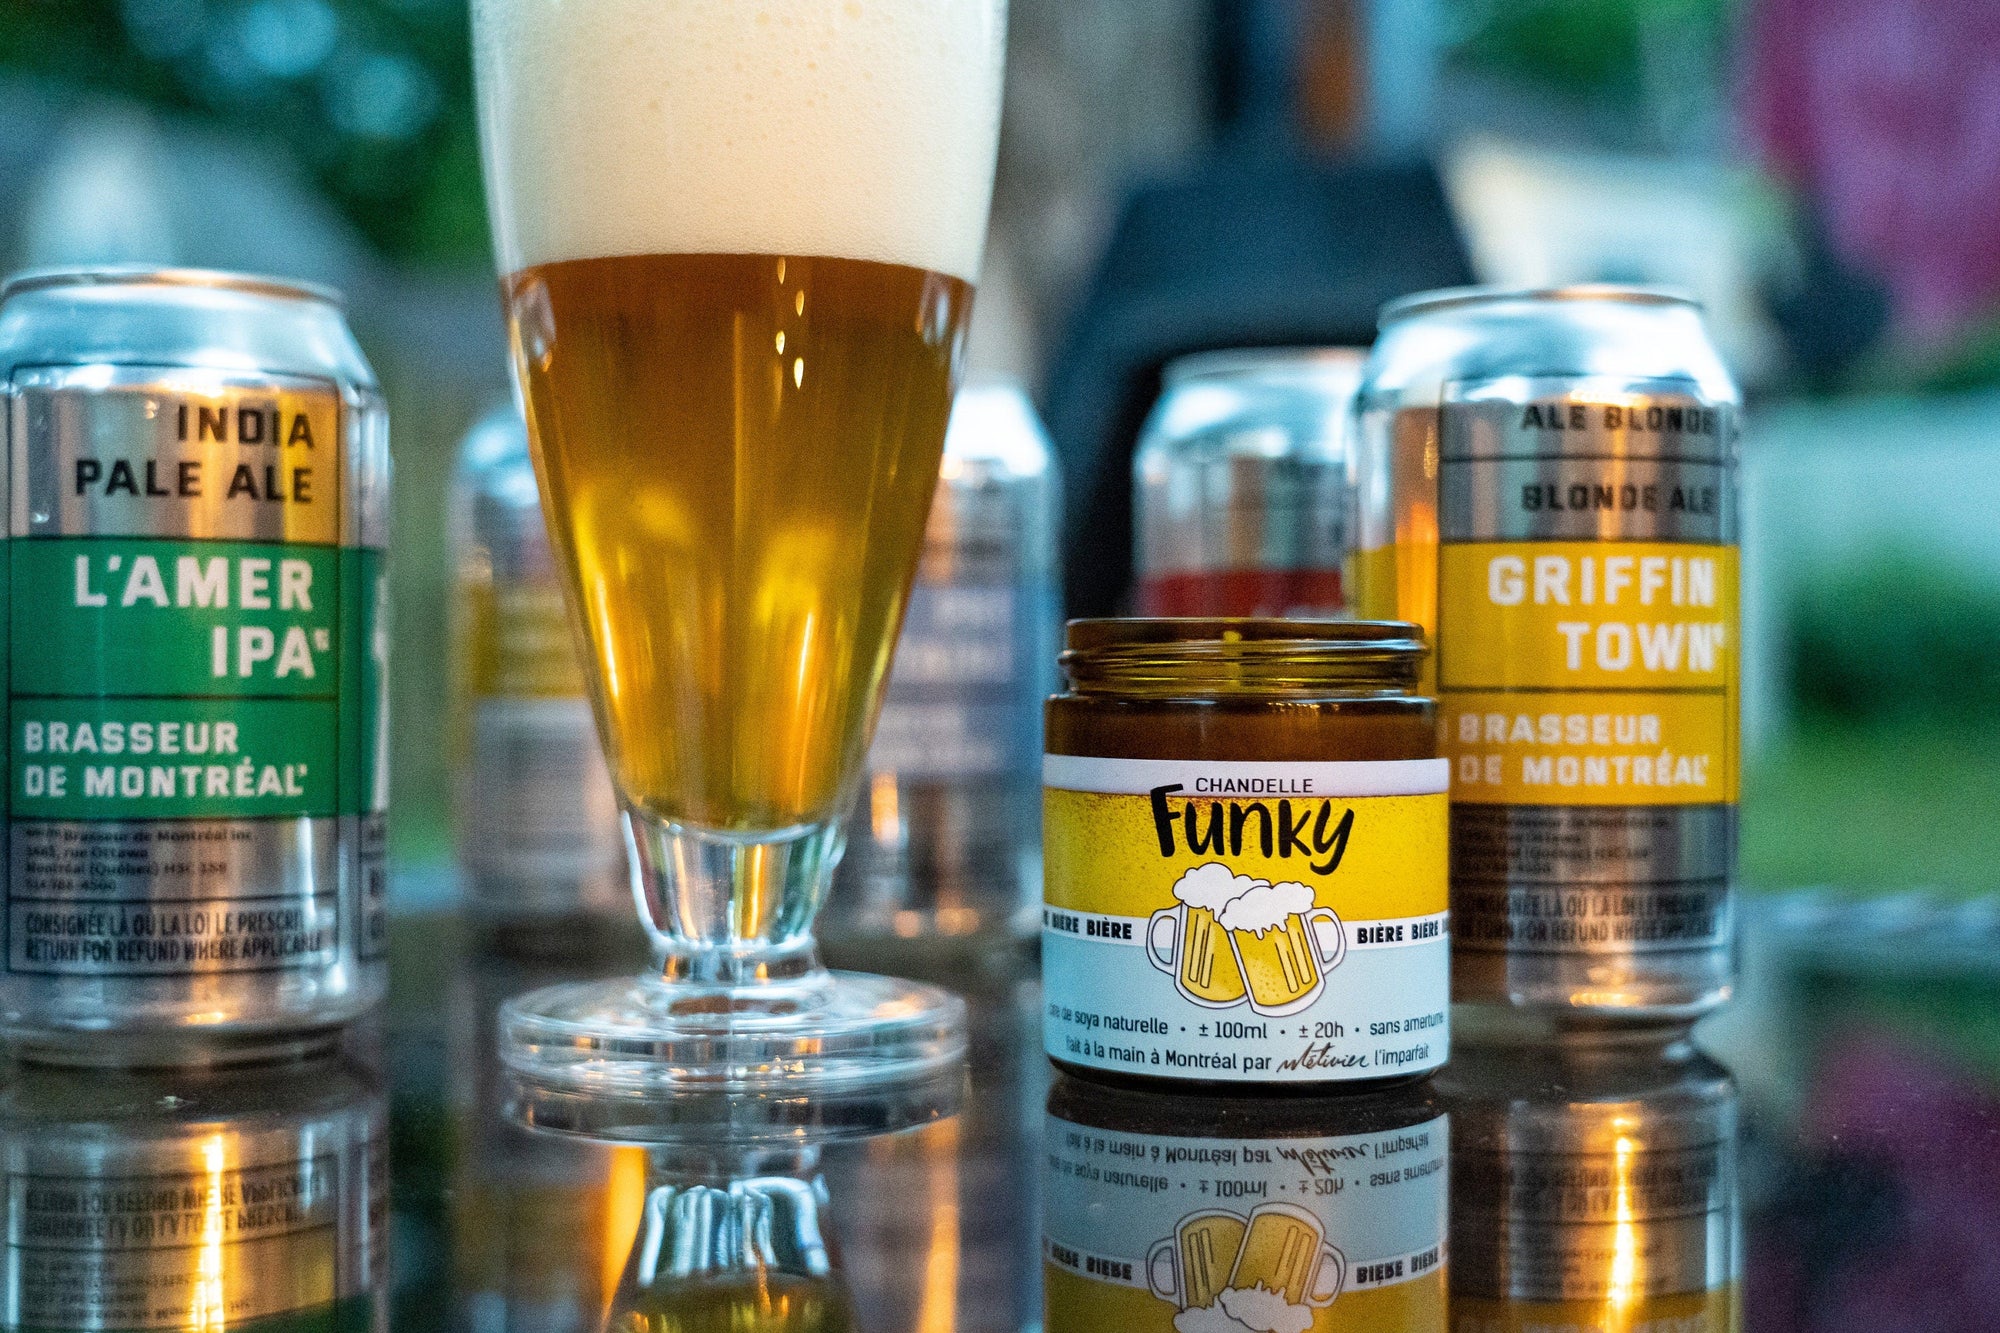 Chandelle Bière - Funky - Funky & Co.